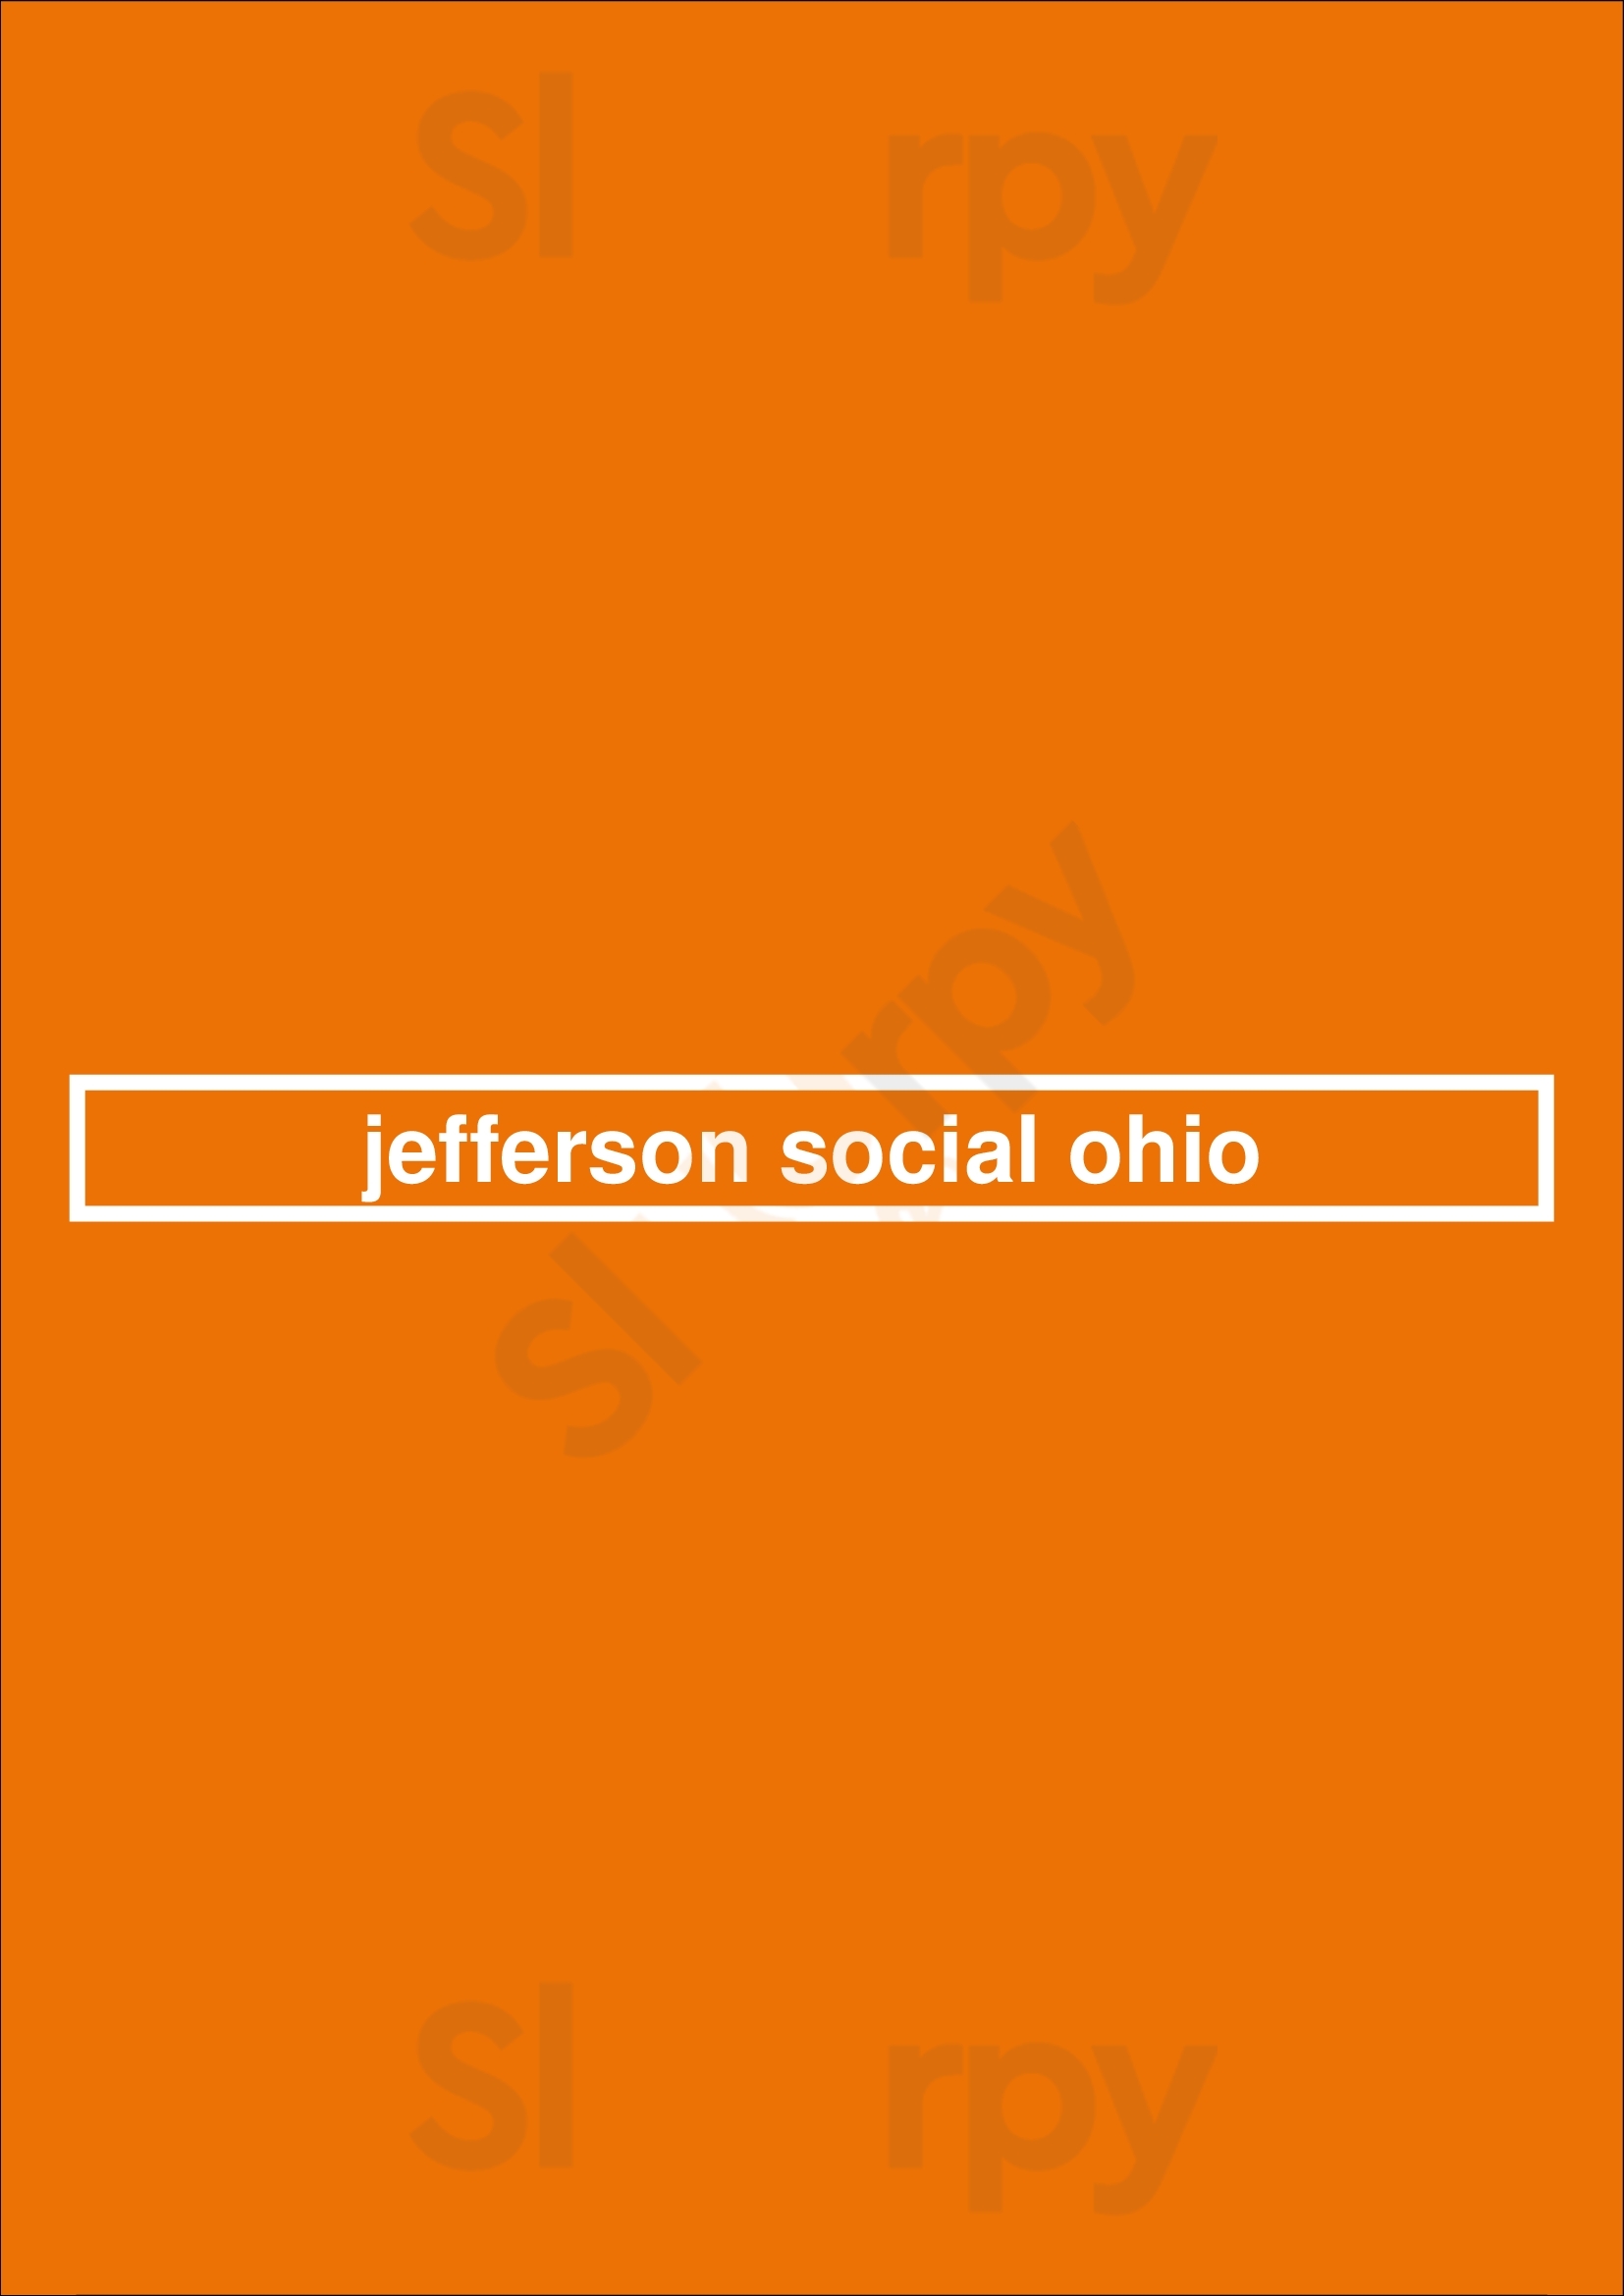 Jefferson Social Ohio Cincinnati Menu - 1